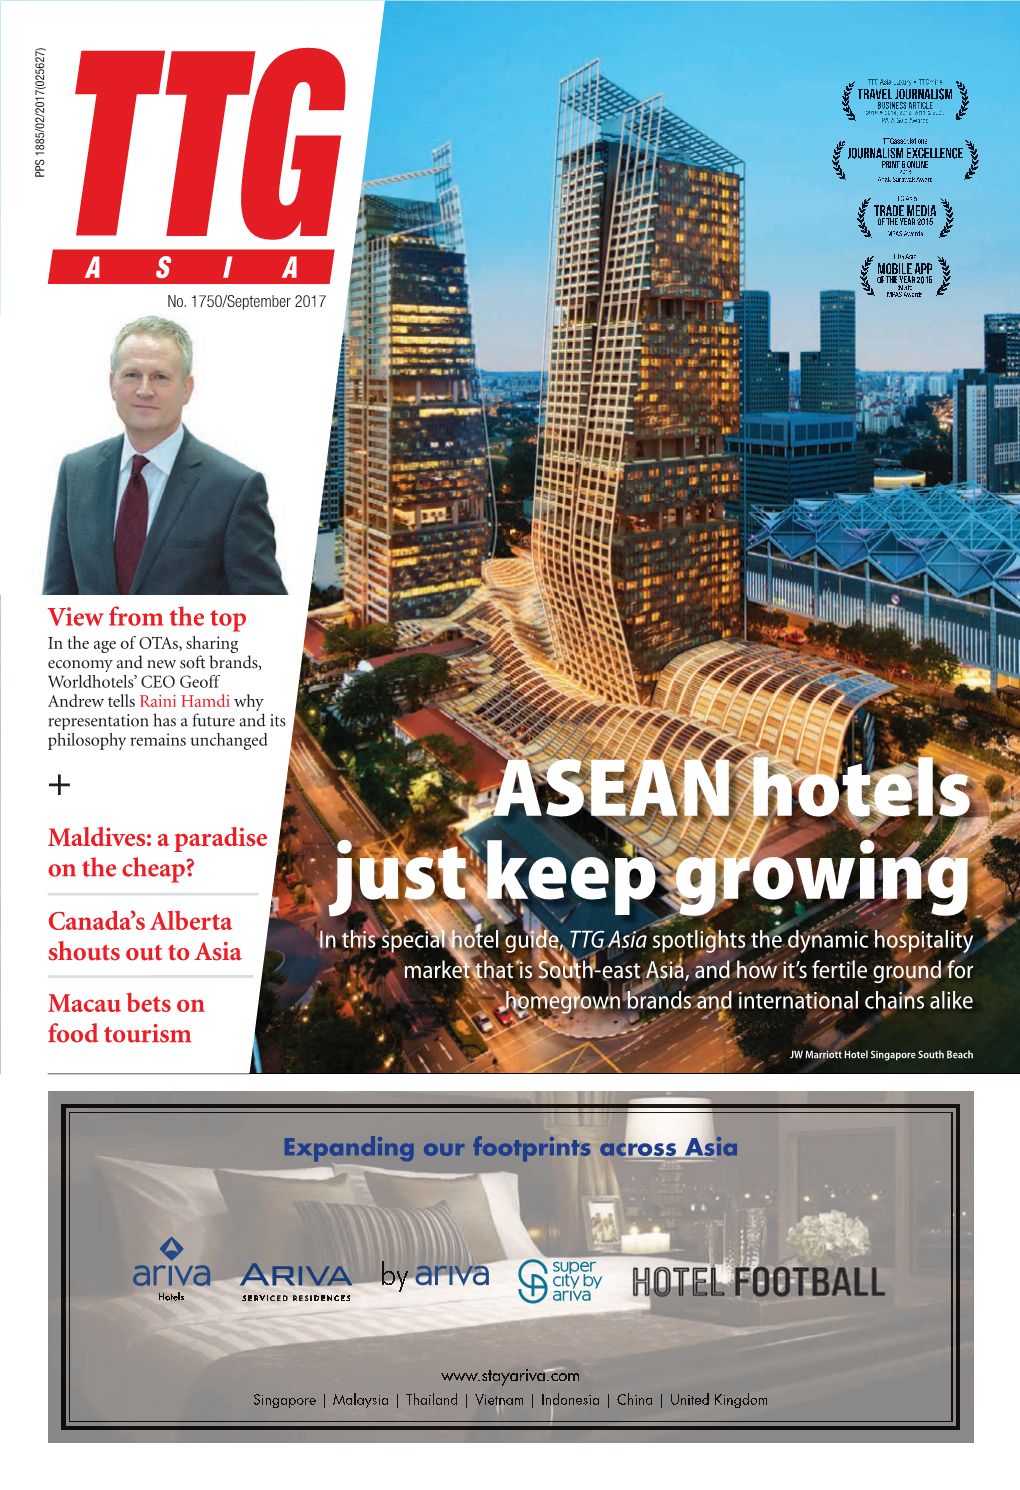 ASEAN Hotels Just Keep Growing